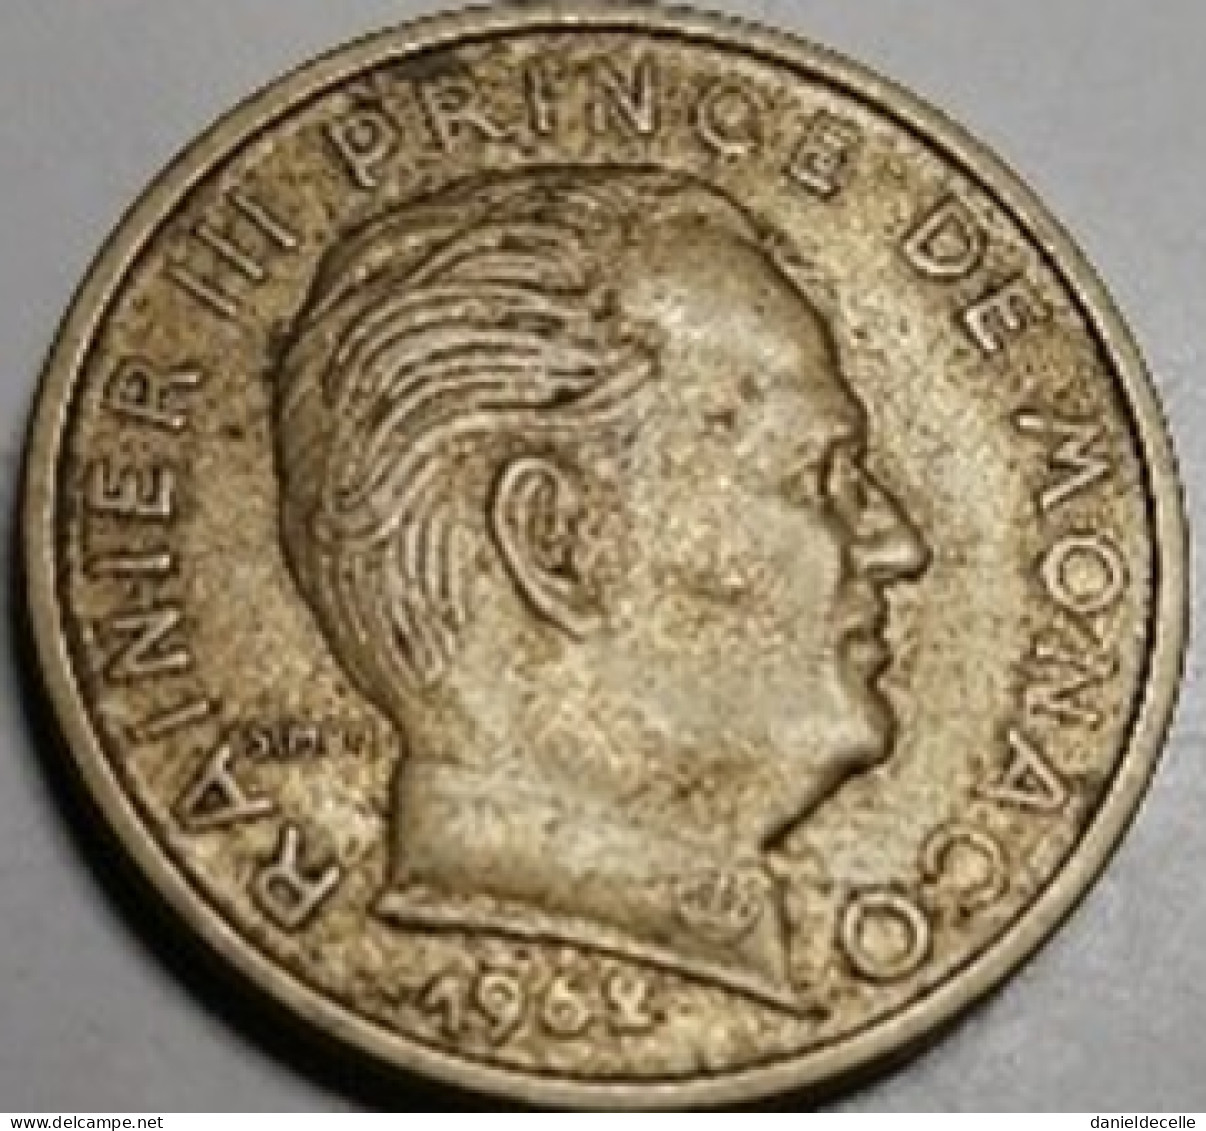 50 Centimes Monaco 1962 - 1960-2001 Nouveaux Francs